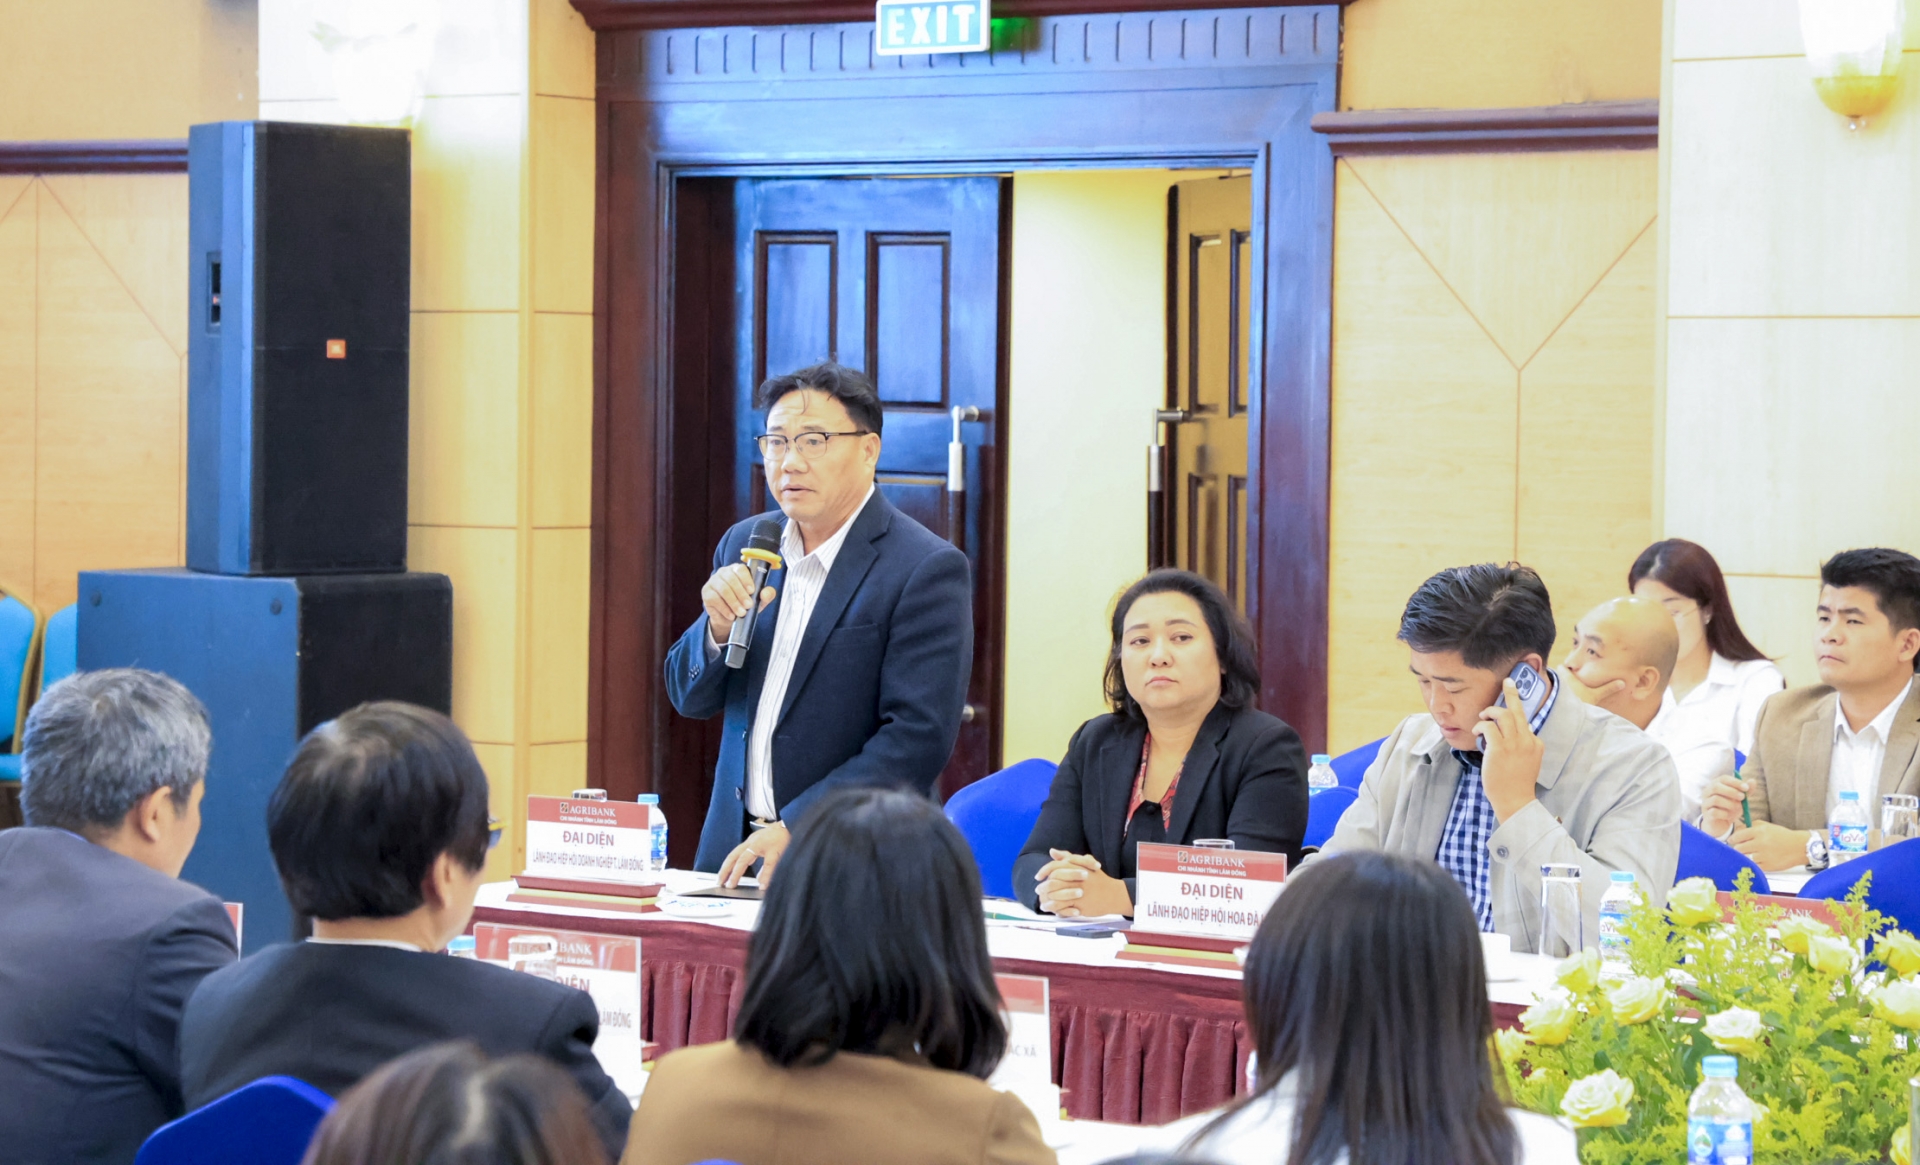 Ông Nguyễn Duy Đa – Phó Chủ tịch Hiệp hội Doanh nghiệp tỉnh Lâm Đồng